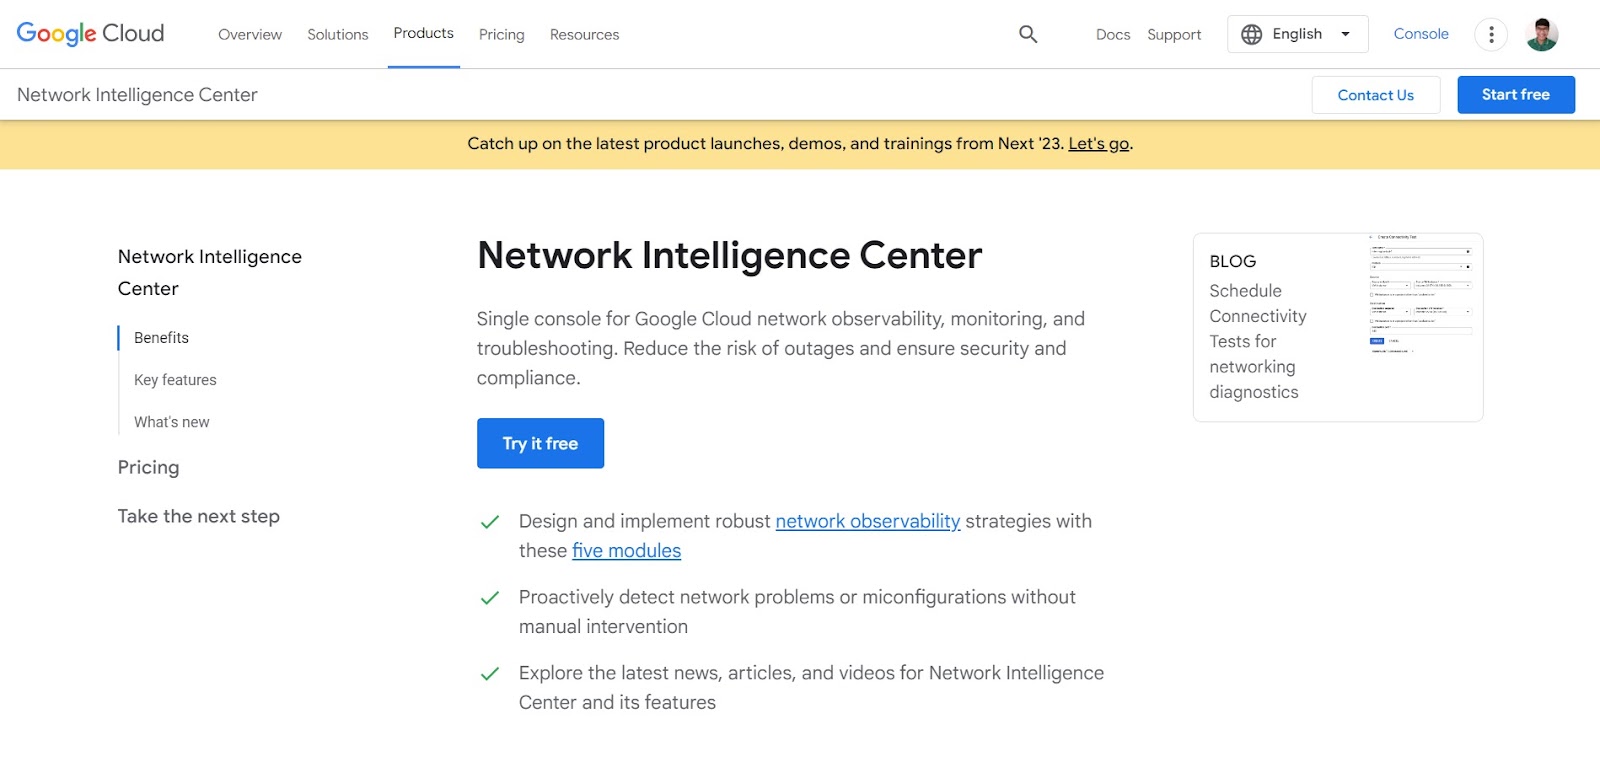 A screenshot of Google Cloud NIC's website